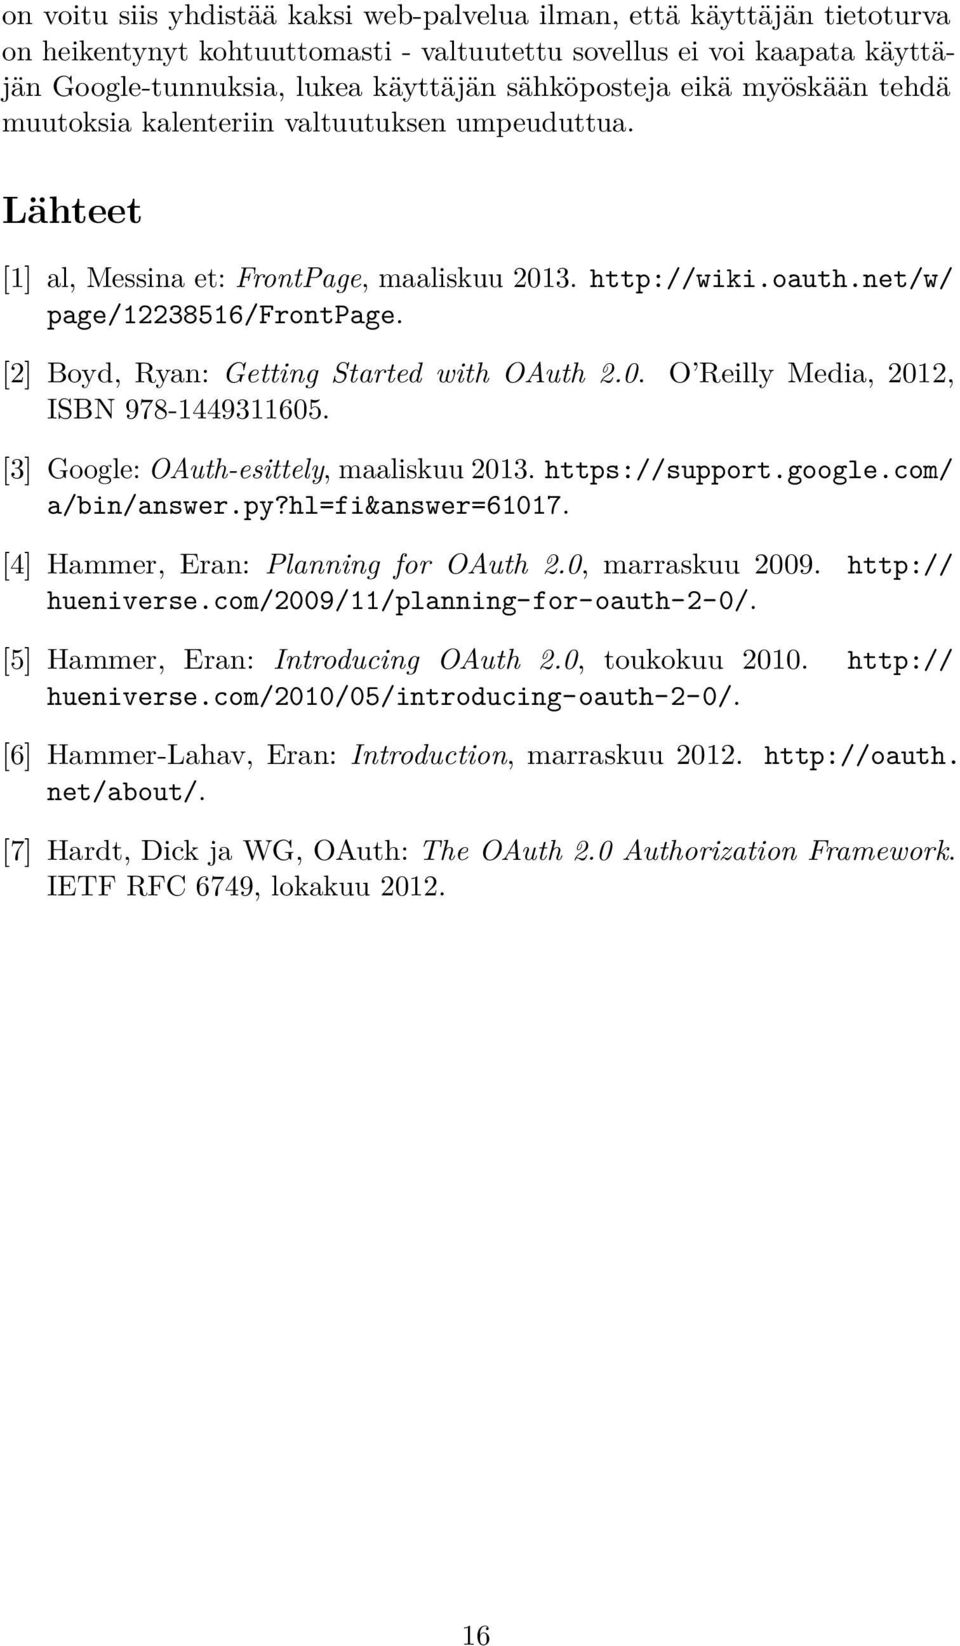 [2] Boyd, Ryan: Getting Started with OAuth 2.0. O Reilly Media, 2012, ISBN 978-1449311605. [3] Google: OAuth-esittely, maaliskuu 2013. https://support.google.com/ a/bin/answer.py?hl=fi&answer=61017.